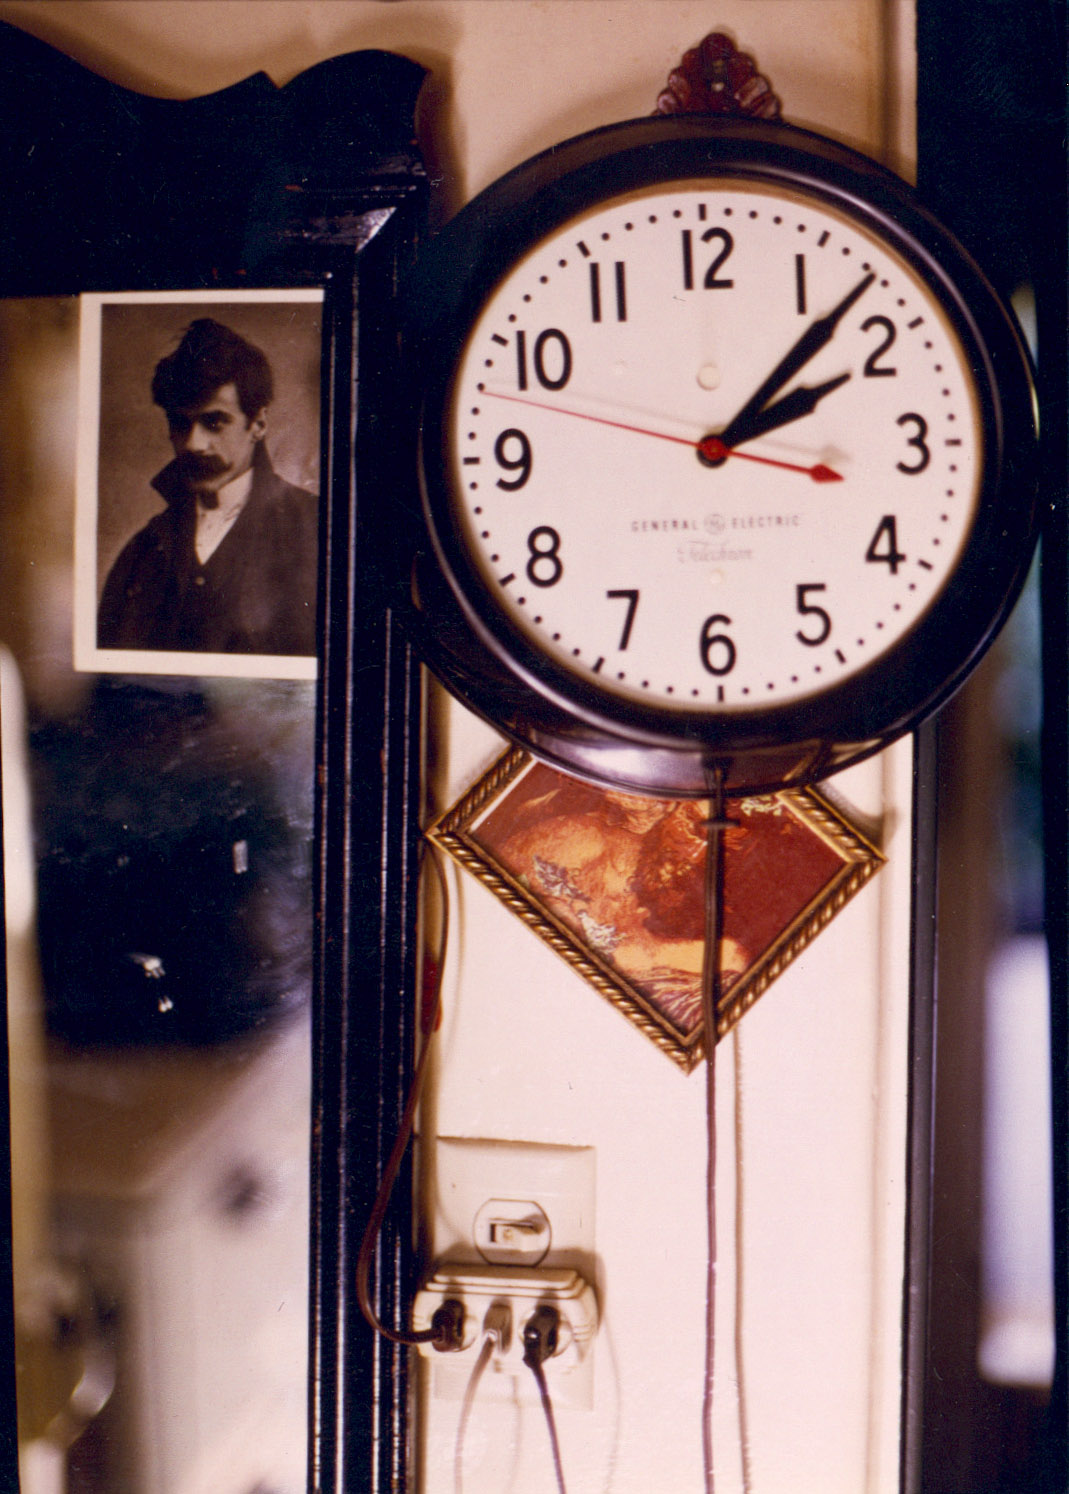 E Still life clock & Steilglitz.jpg